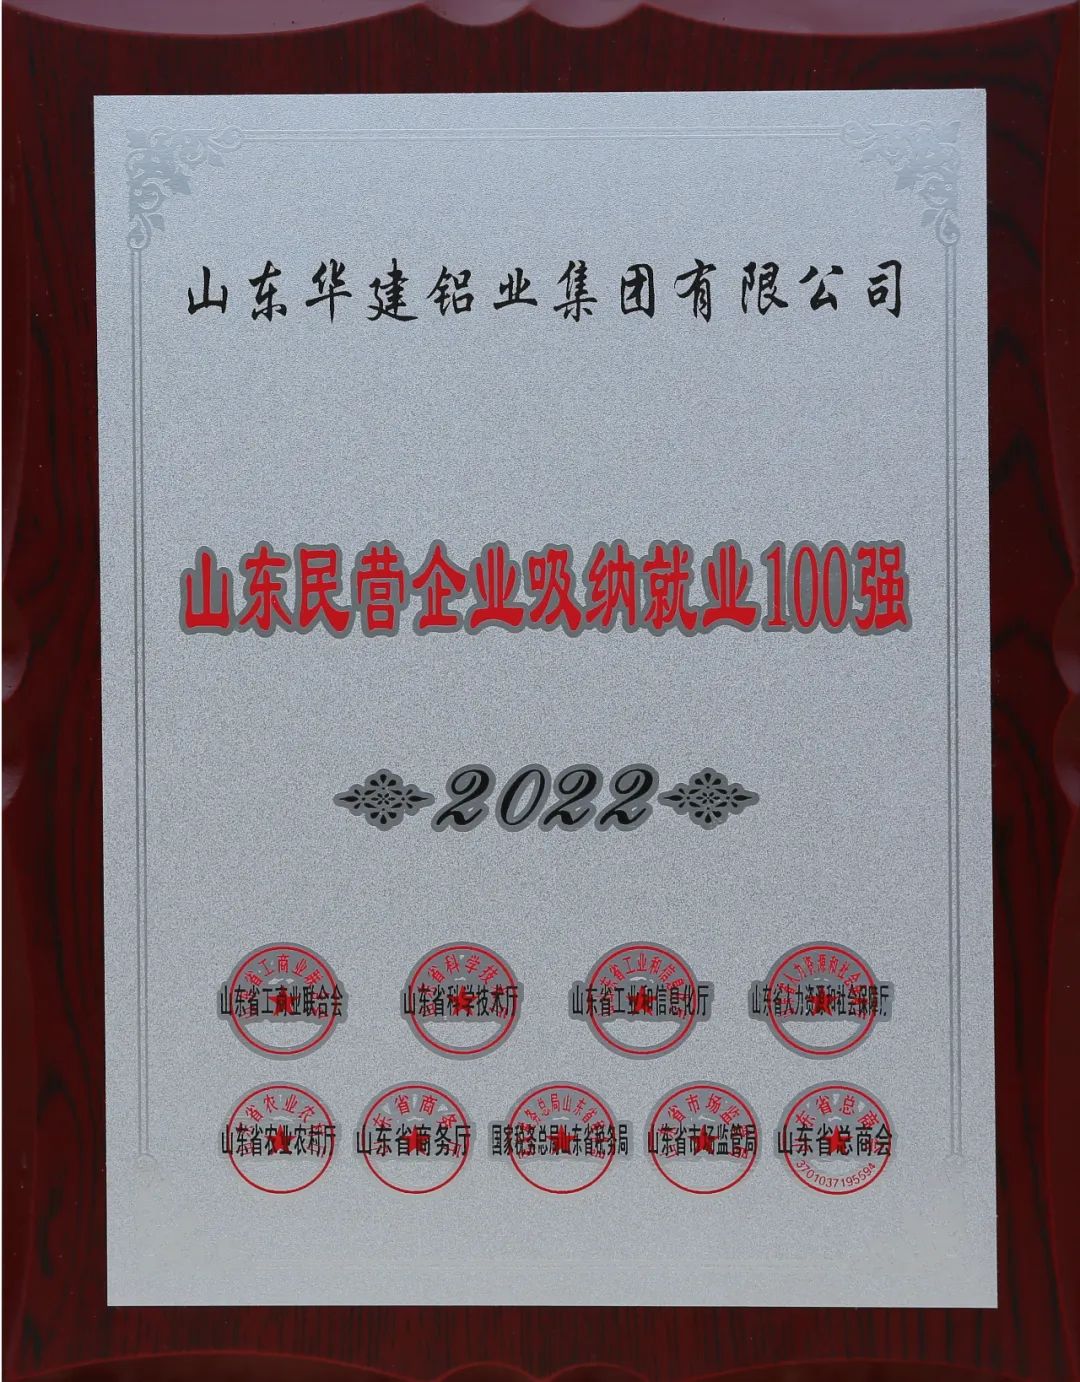 華建鋁業上榜2022年山東民營企業行業領軍10強、吸納就業100強榜單